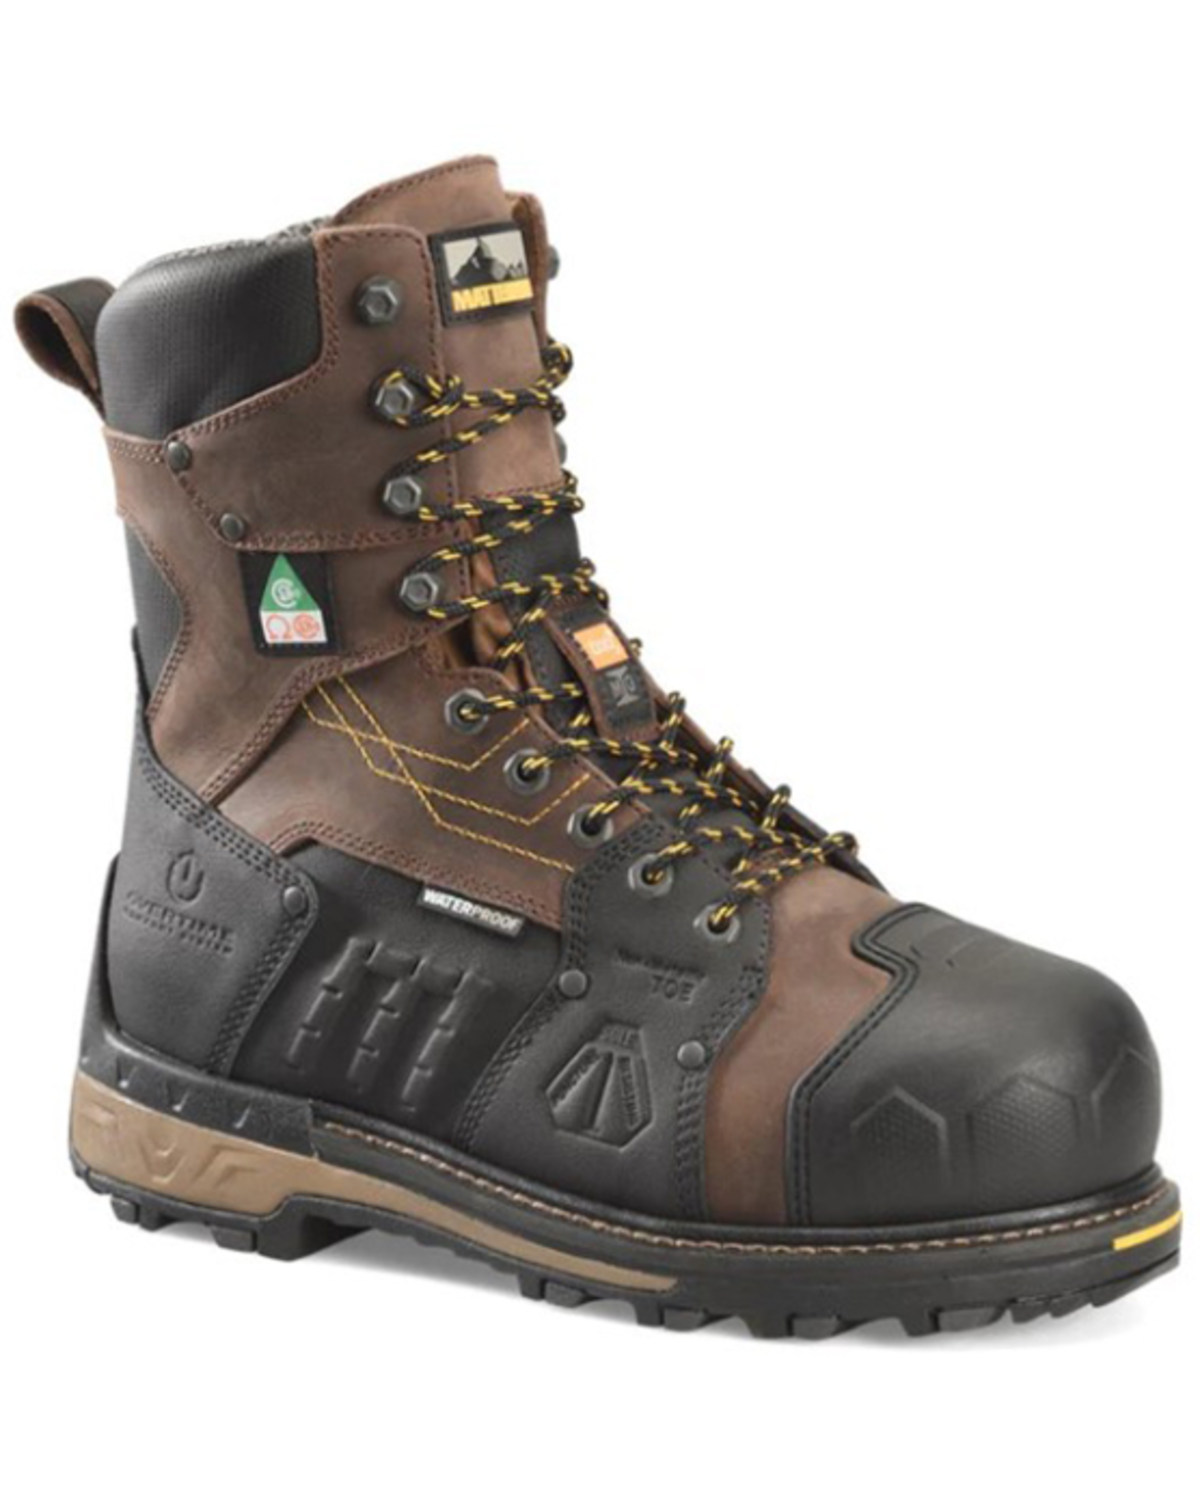 Matterhorn Men's 8" Waterproof Internal Met Guard Work Boots - Composite Toe